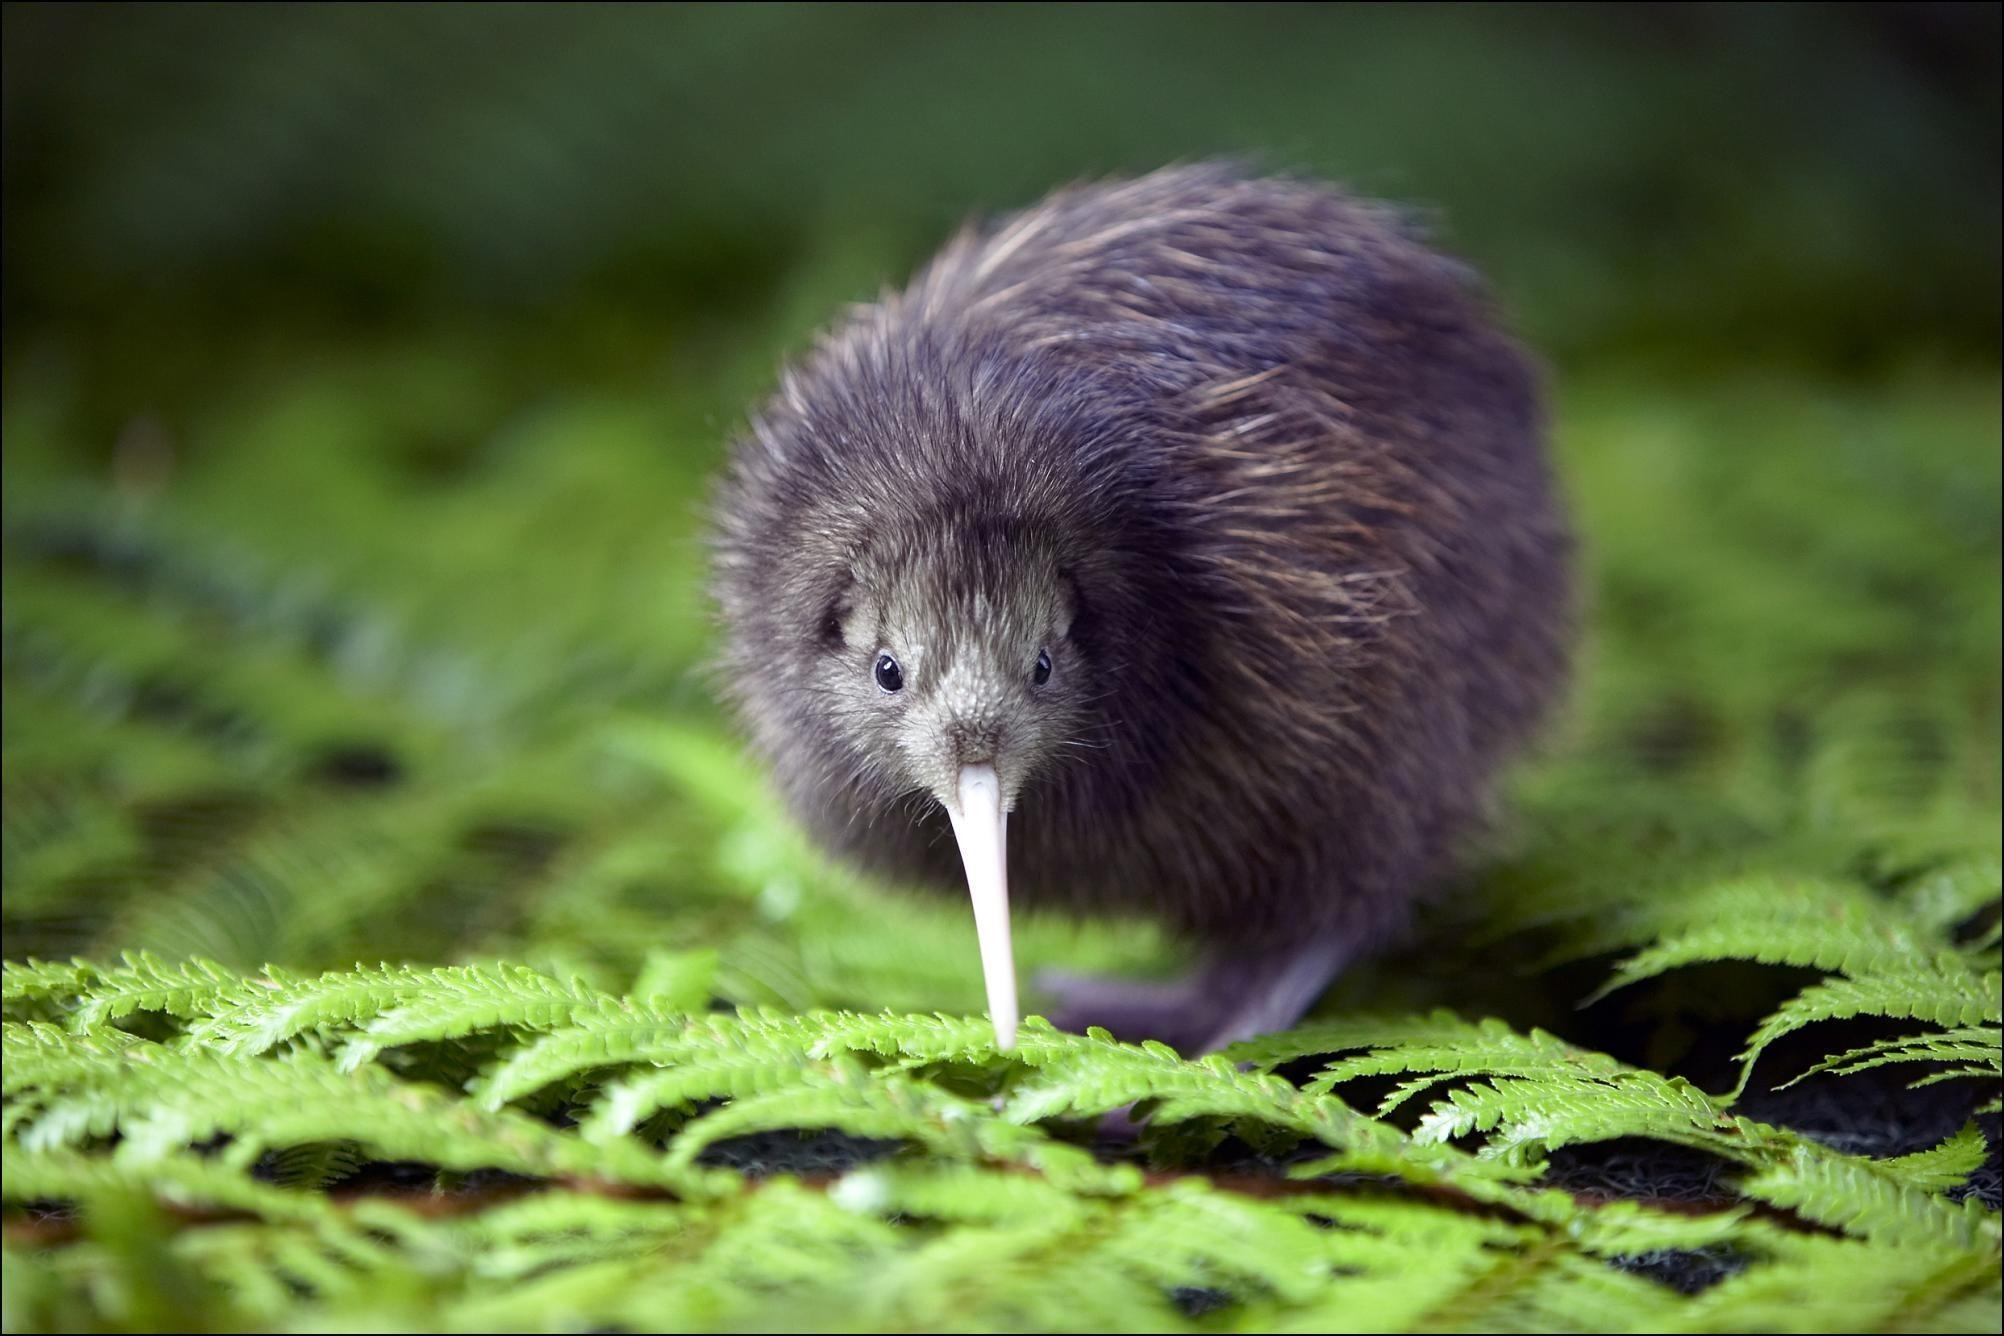 Млекопитающее зеленого цвета. Киви птица. Птица киви символ новой Зеландии. Новозеландский киви птица. Новозеландская киви киви.